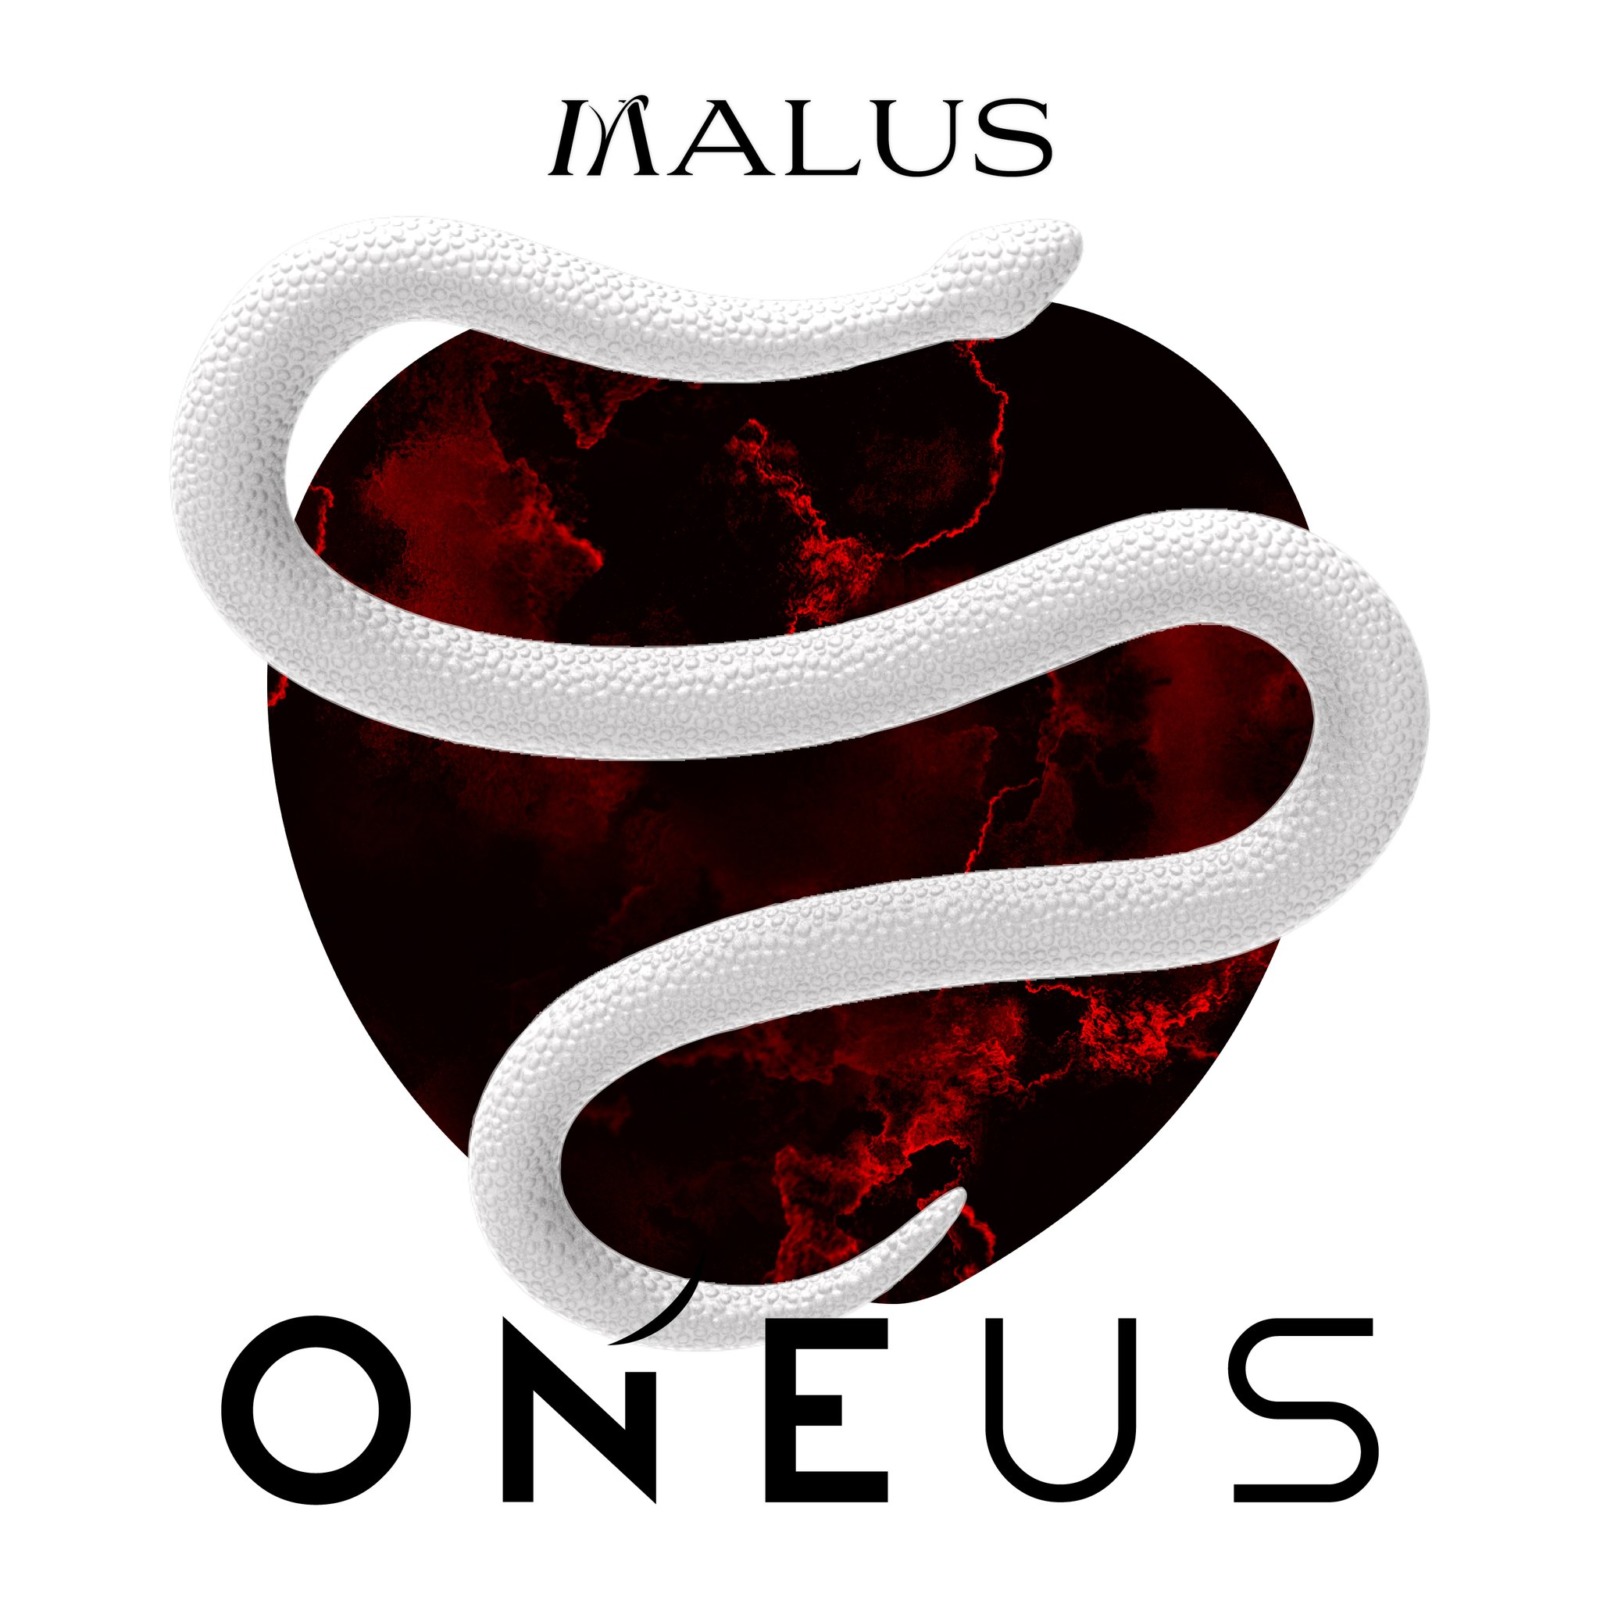 ONEUS (ウォノス) 8thミニアルバムリリース！タイトル曲「Same Scent (セイムセント)」でシックな色気が爆発！